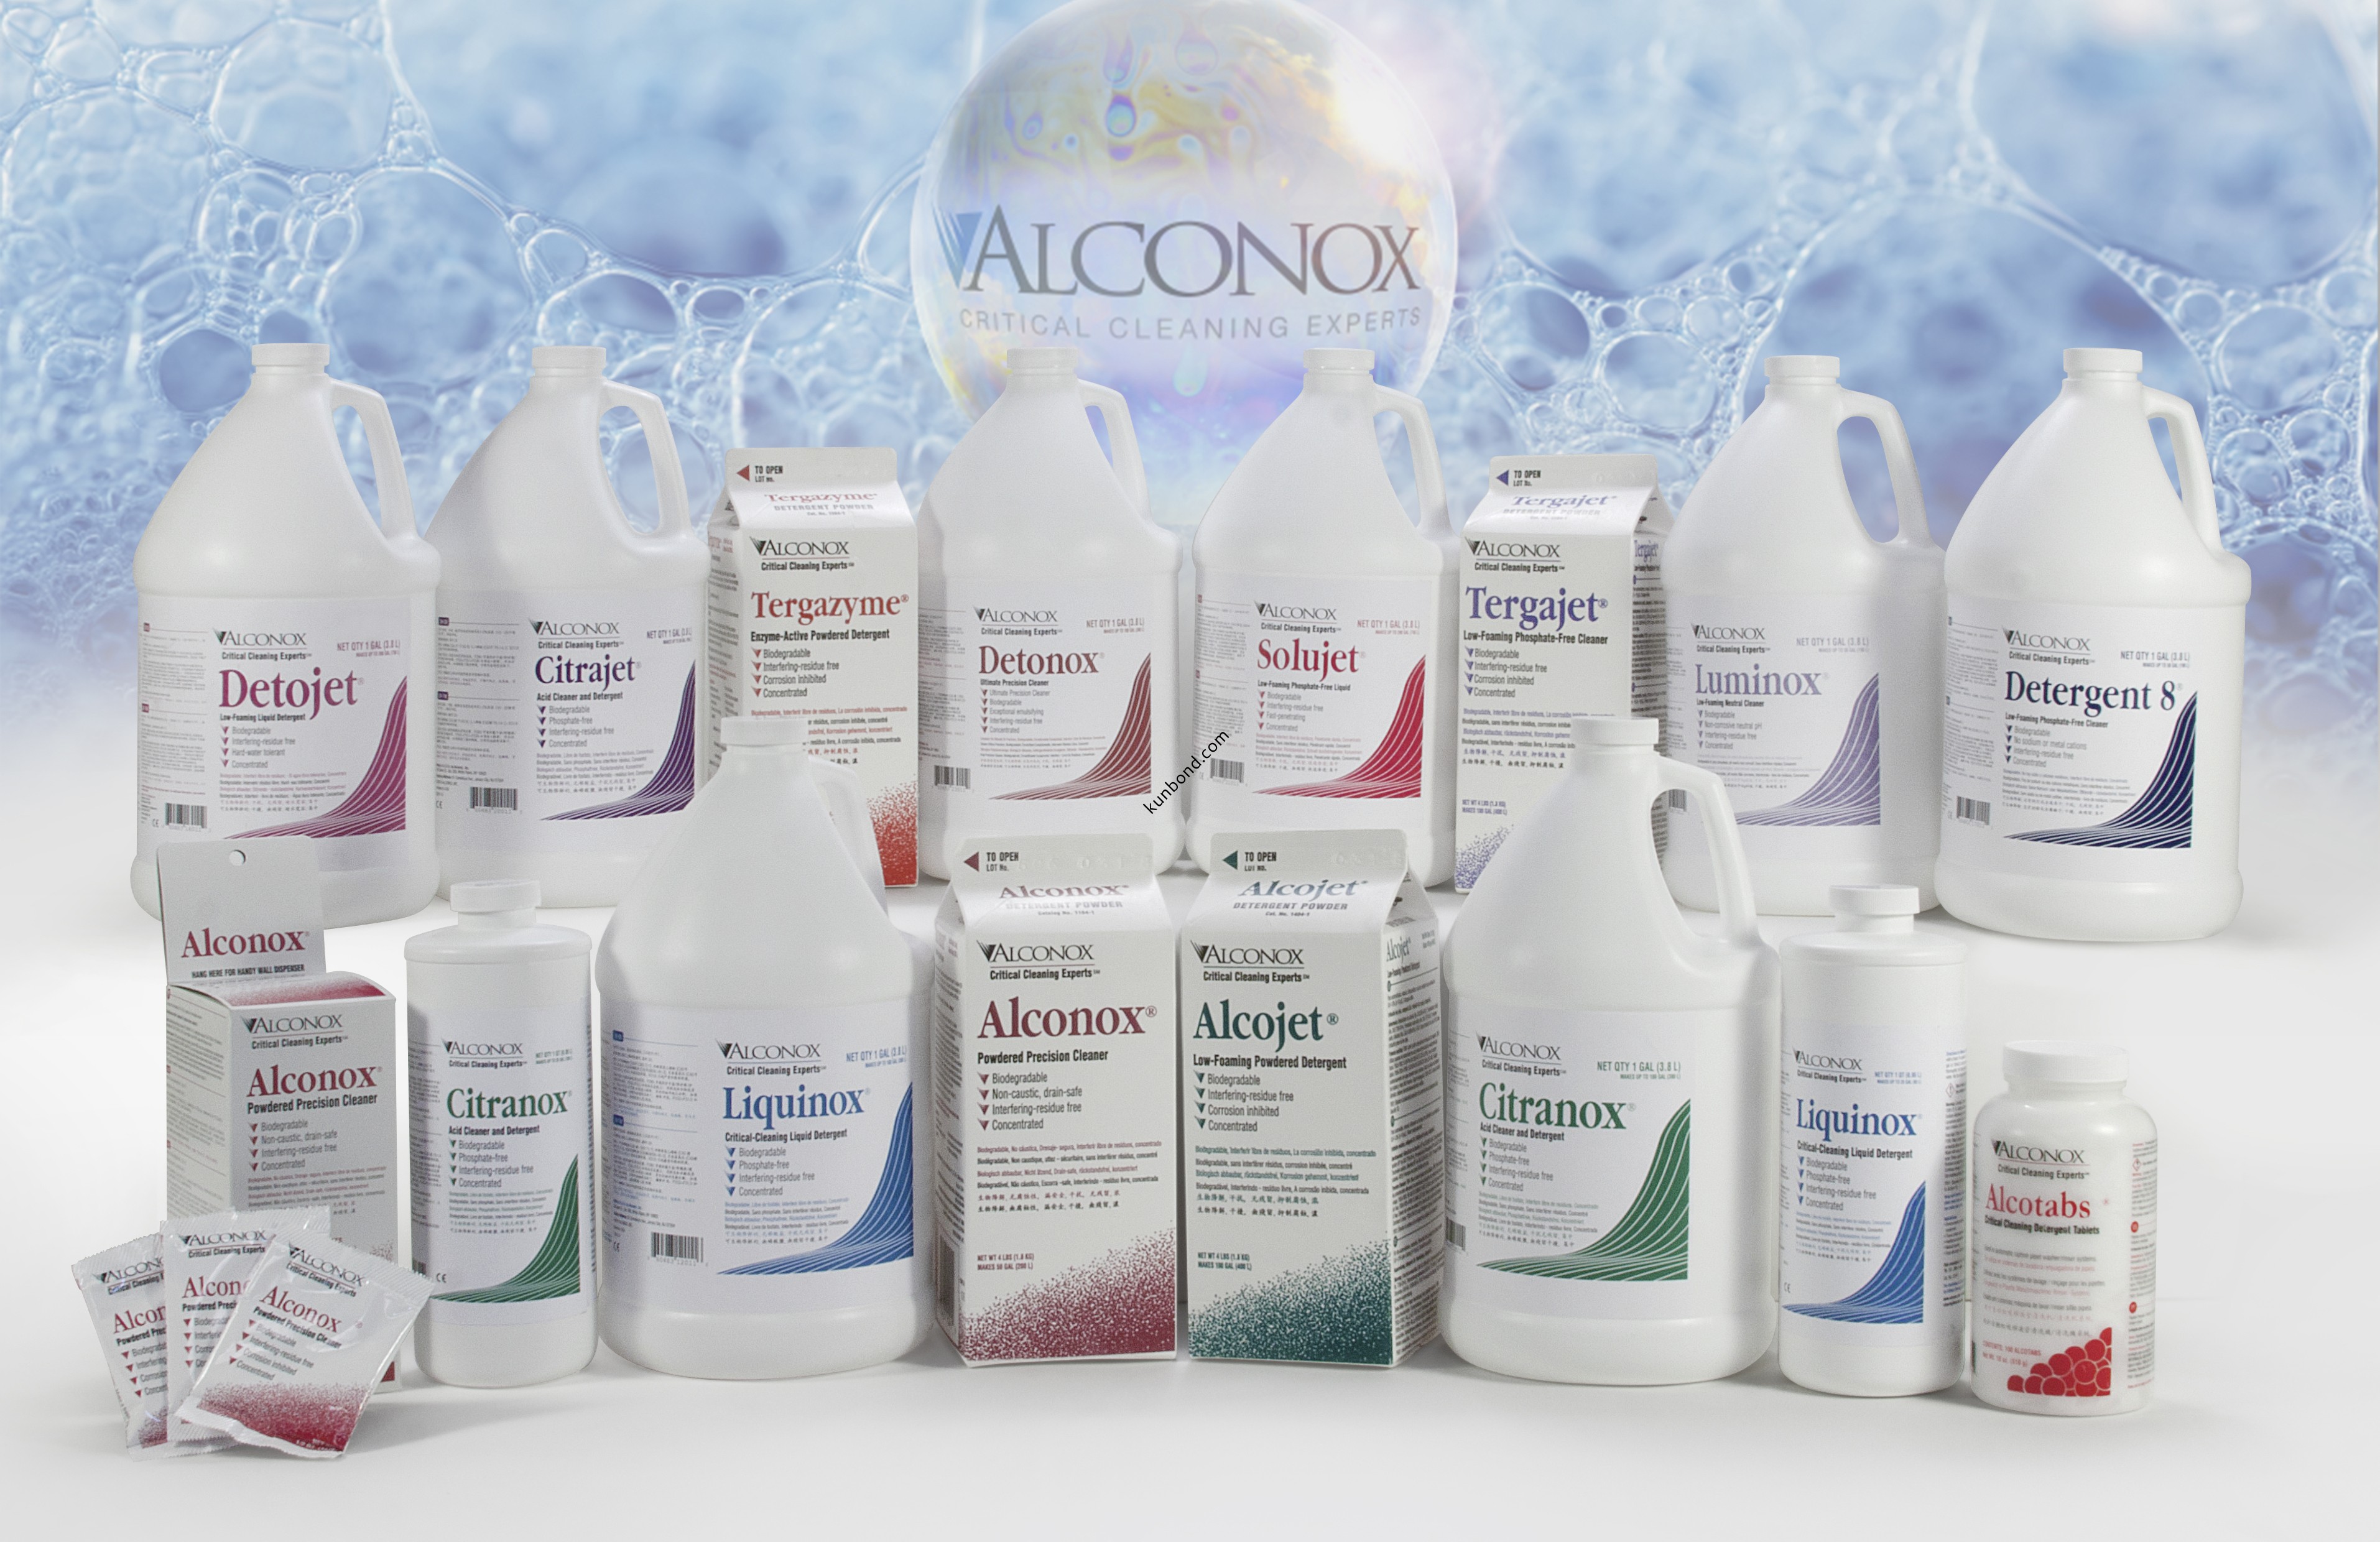 Alconox產品包括：Alconox精密粉狀清潔劑，Alcojet低泡沫粉狀清潔劑，Liquinox精密水性清潔劑，Citranox酸洗清潔劑等等